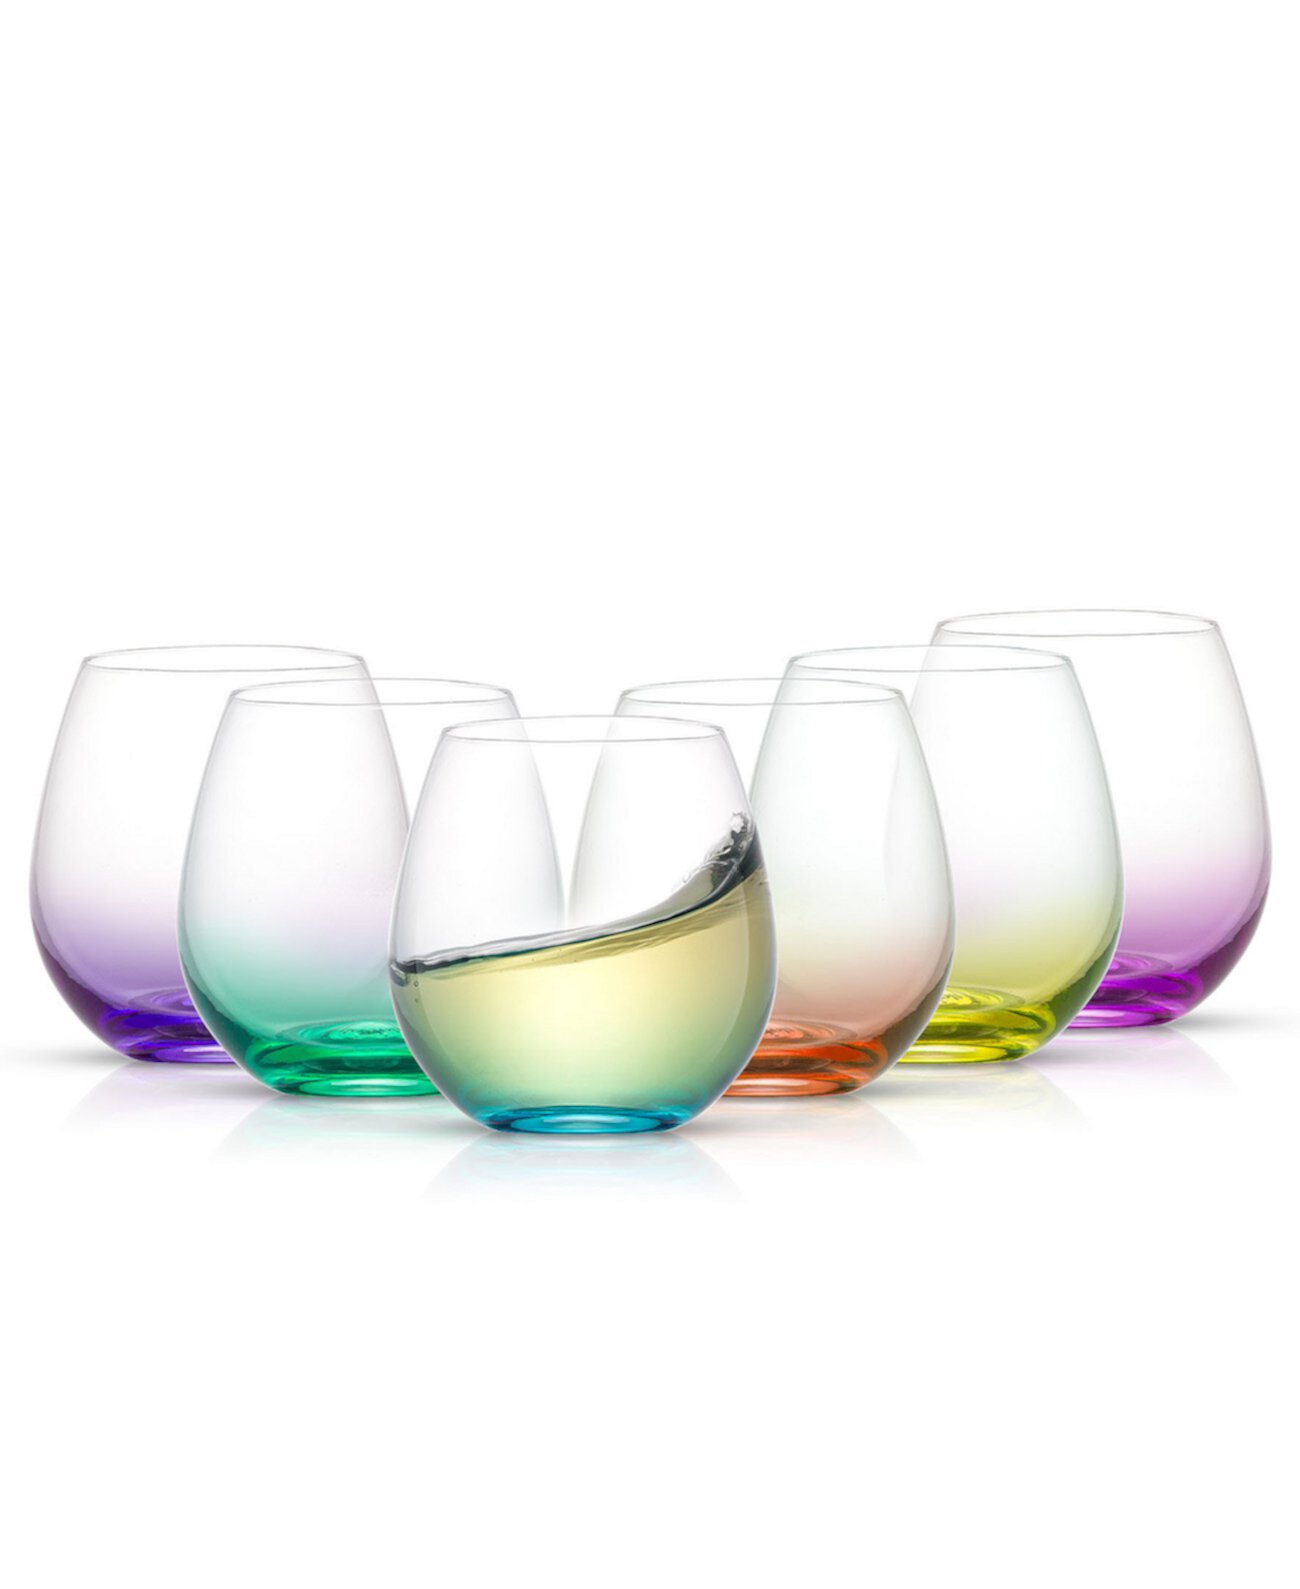 Цветные бокалы для вина без ножек, набор из 6 шт. JoyJolt